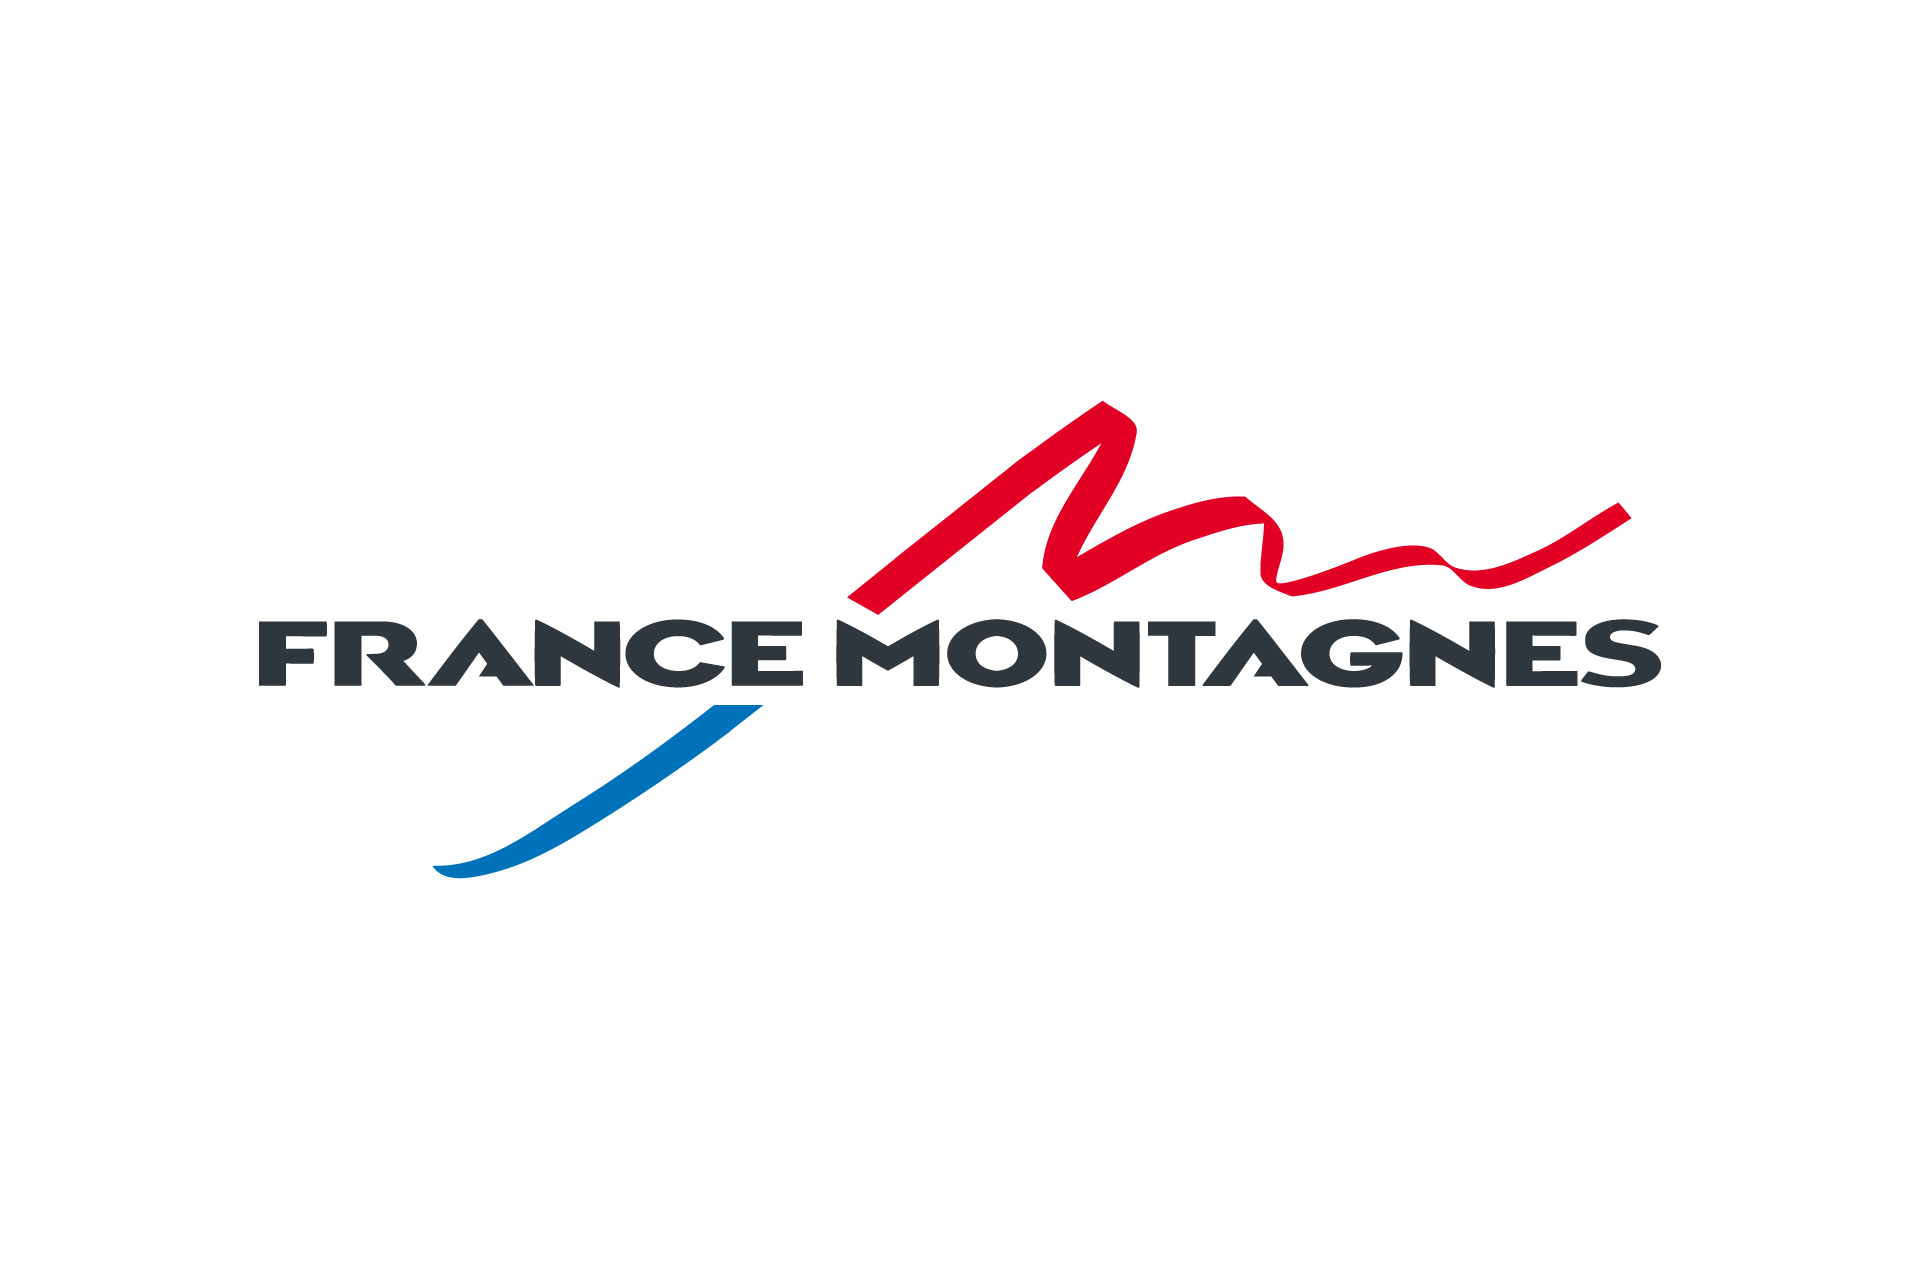 Chamrousse logo partner institution france montagnes ski resort grenoble isere french alps france - © France montagnes 